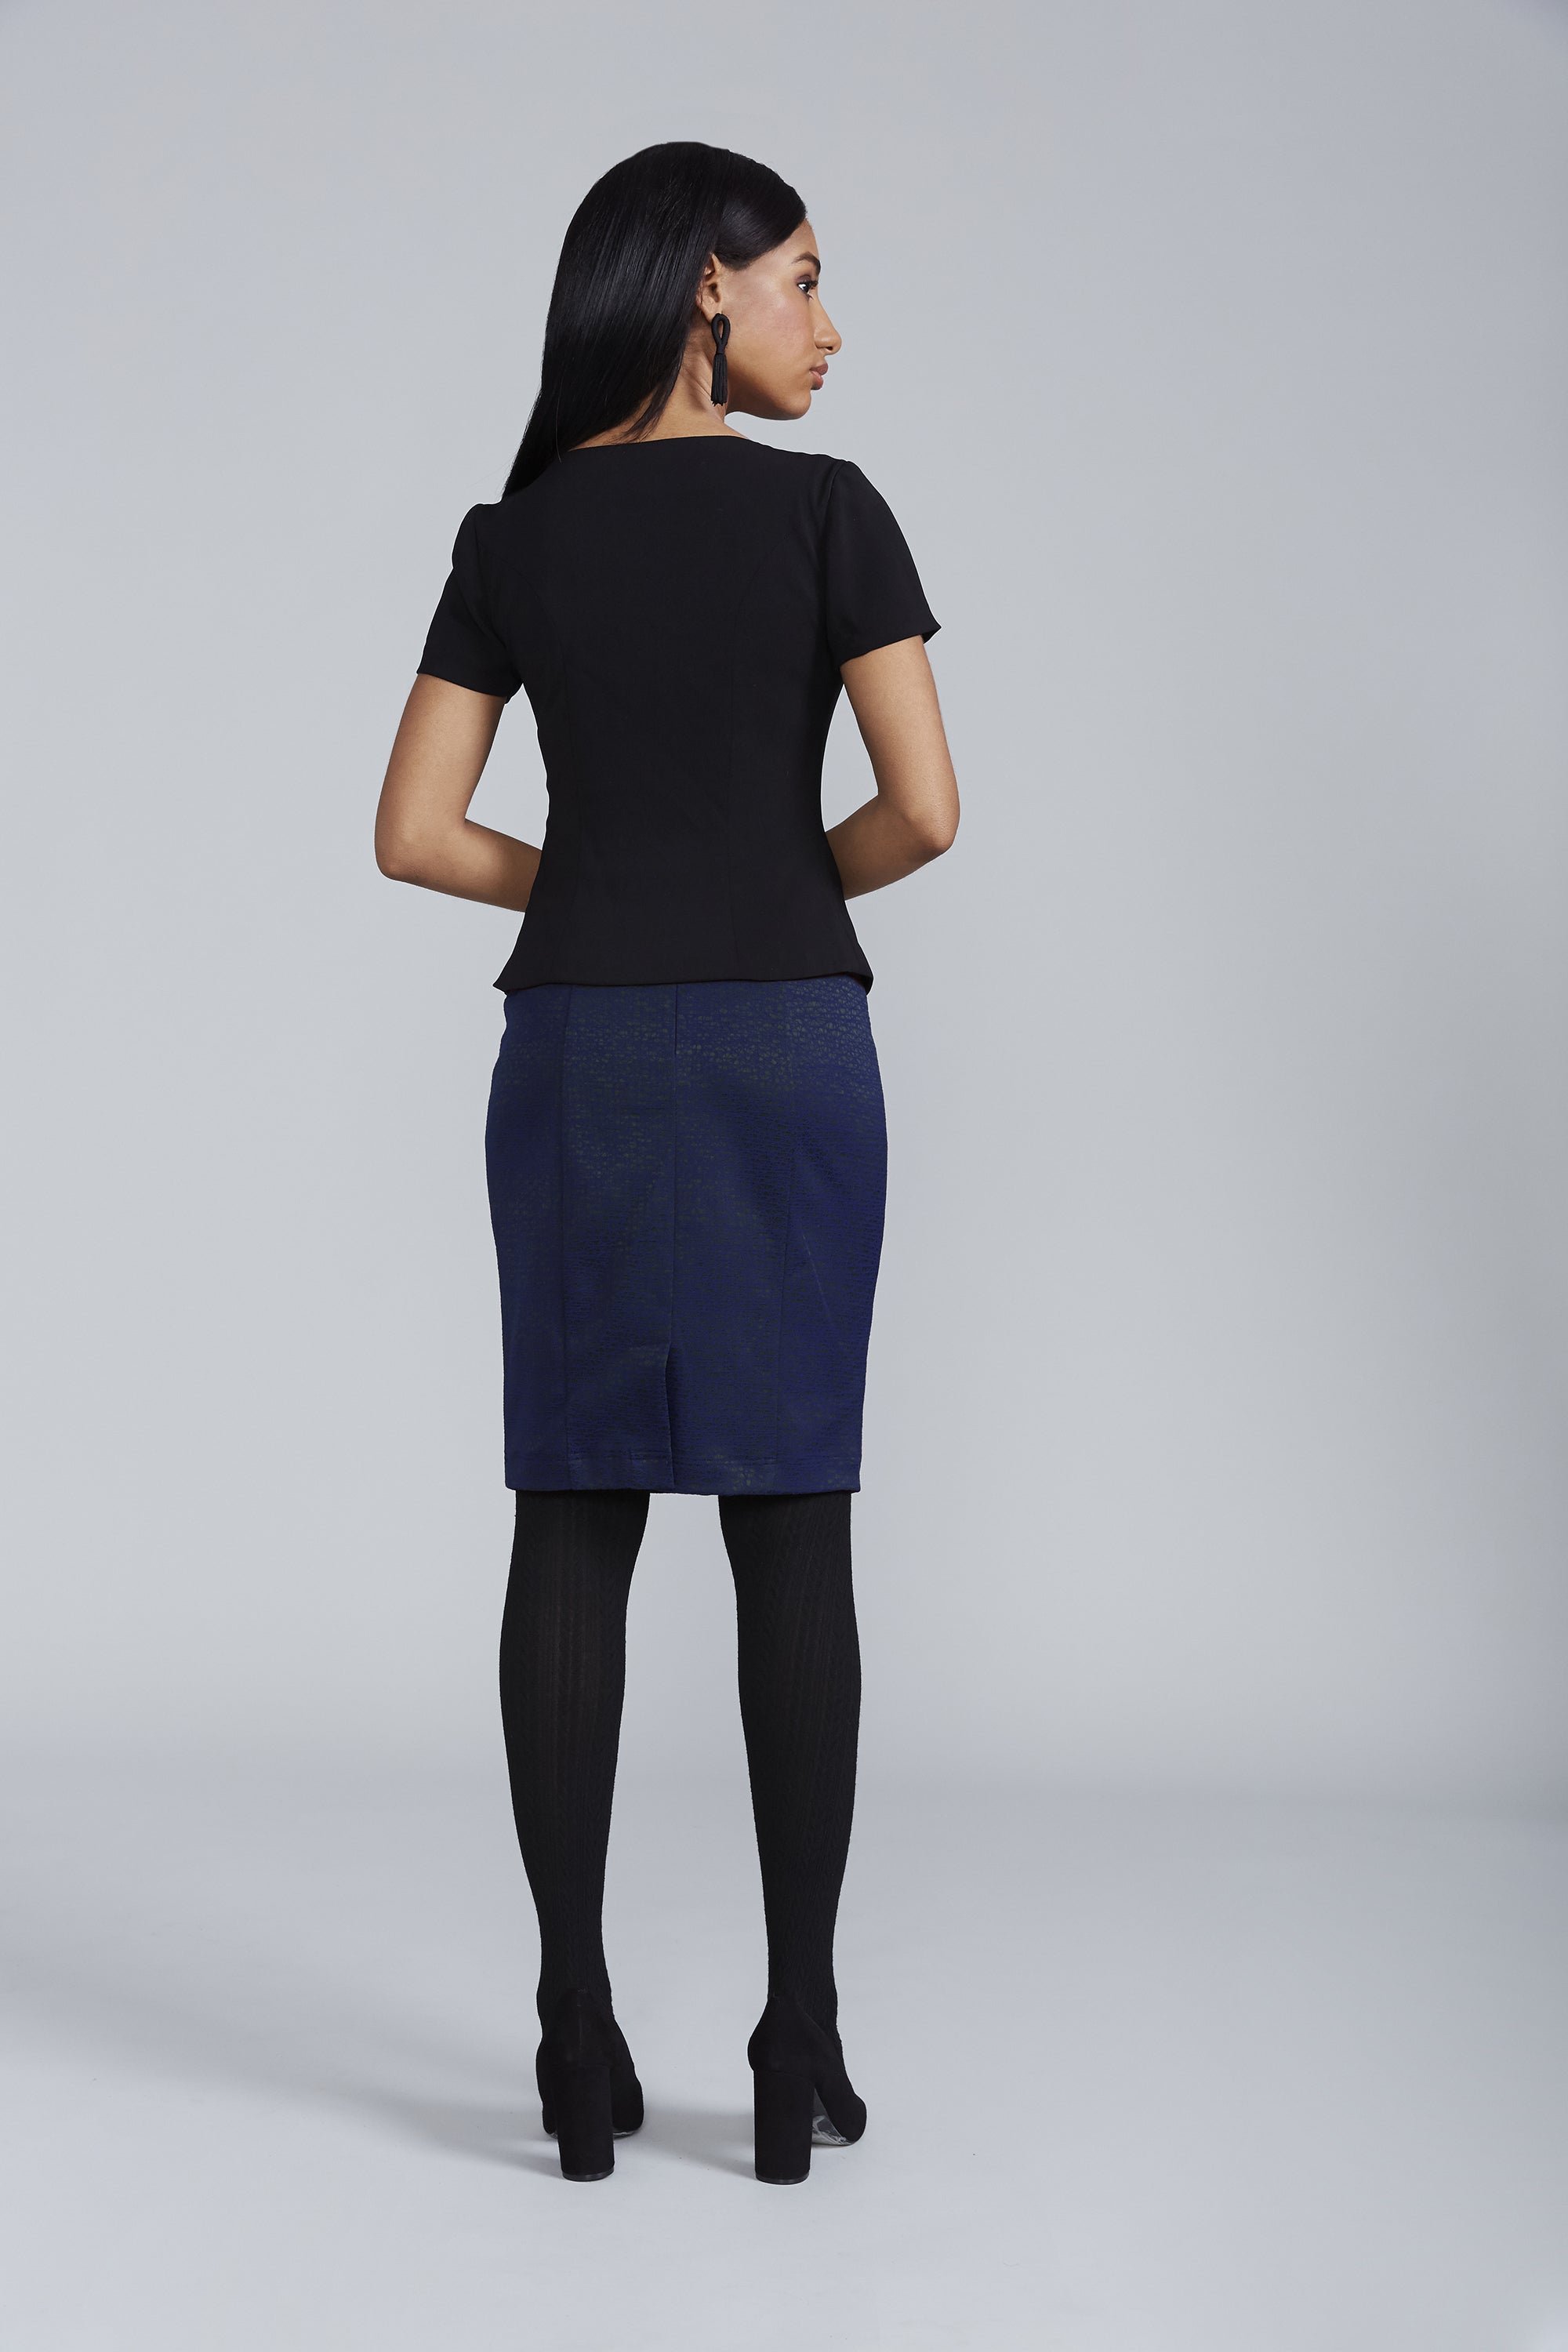 Professional Women's Chelsea Skirt in Navy Jacquard | Nora Gardner